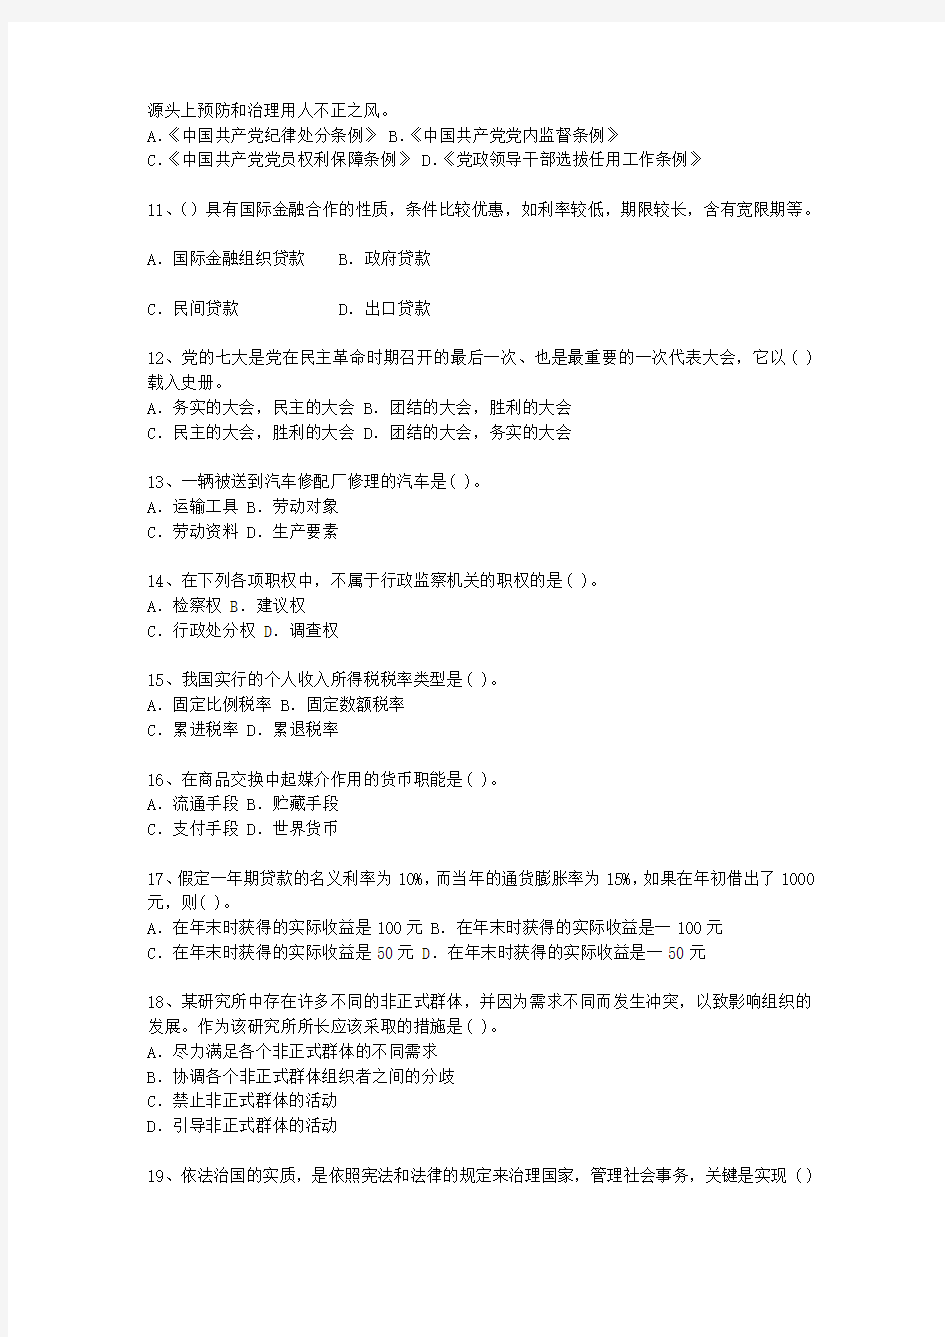 2012江西省公开选拔党政副科级领导干部公共科目最新考试试题库(完整版)